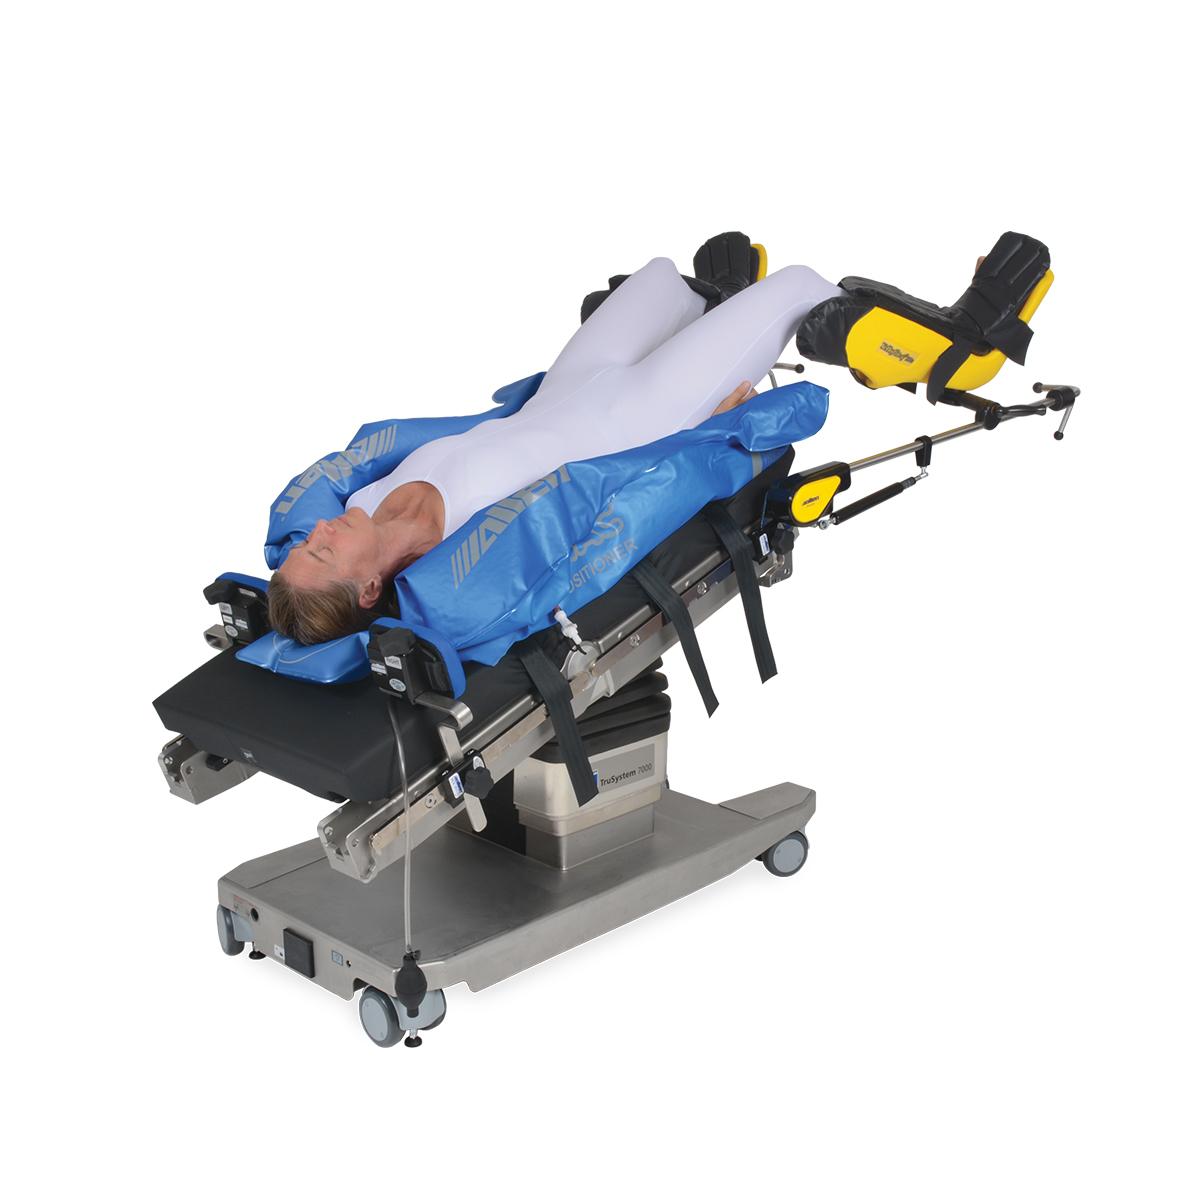 Vue en diagonale des repose-corps en déclive accentuée Allen Hug-U-Vac avec patient